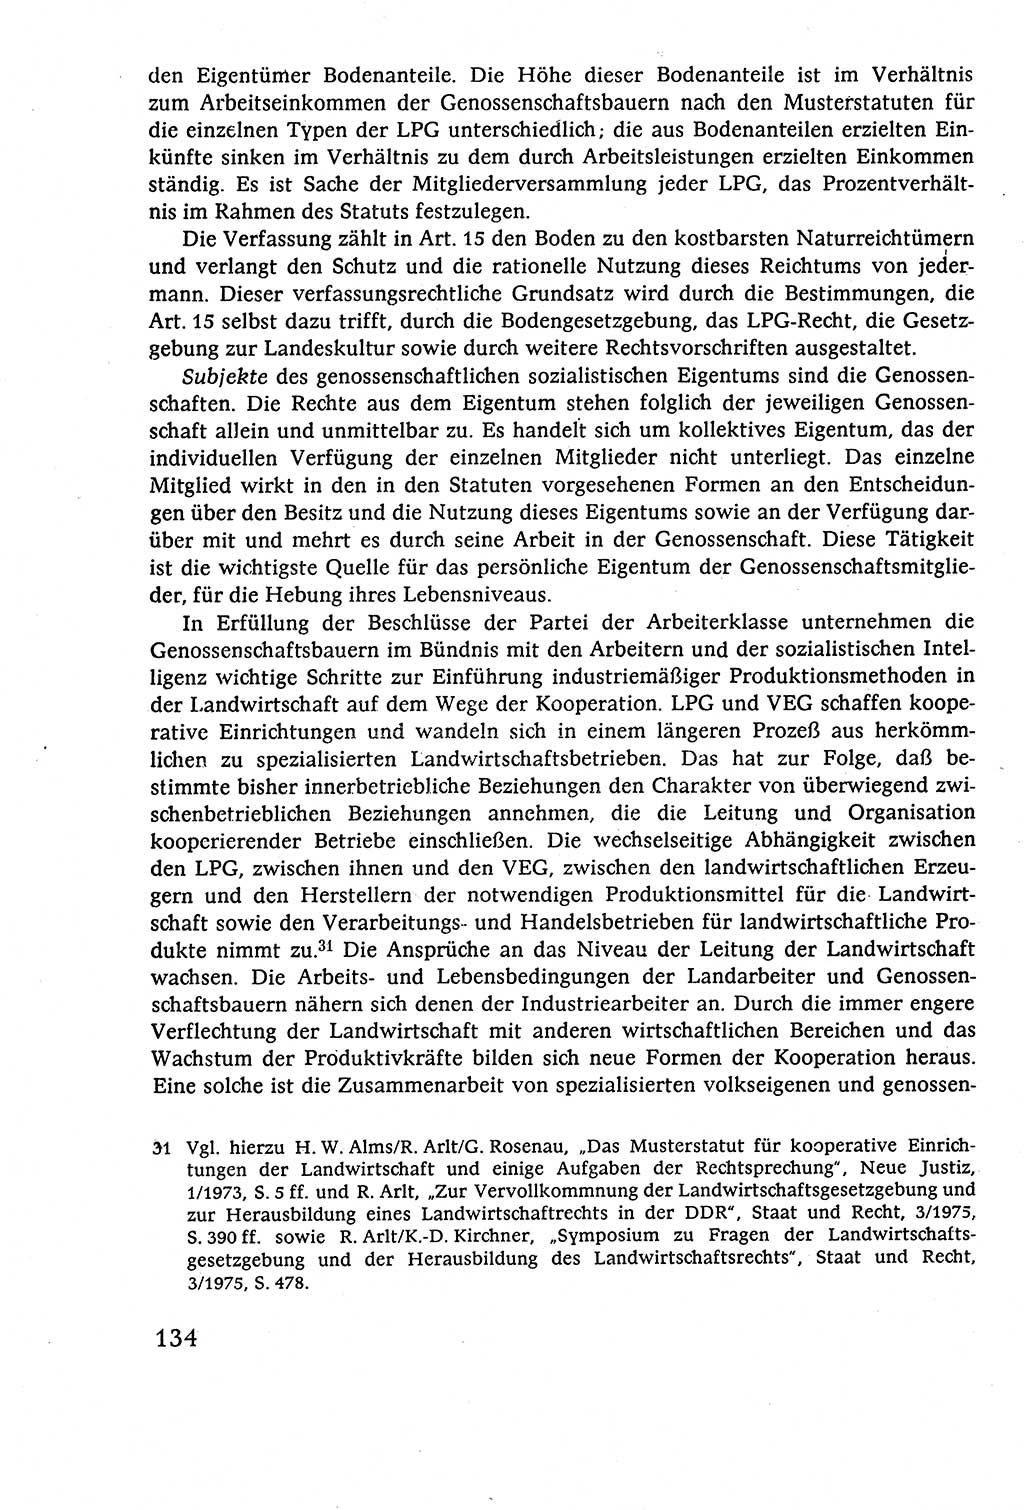 Staatsrecht der DDR (Deutsche Demokratische Republik), Lehrbuch 1977, Seite 134 (St.-R. DDR Lb. 1977, S. 134)